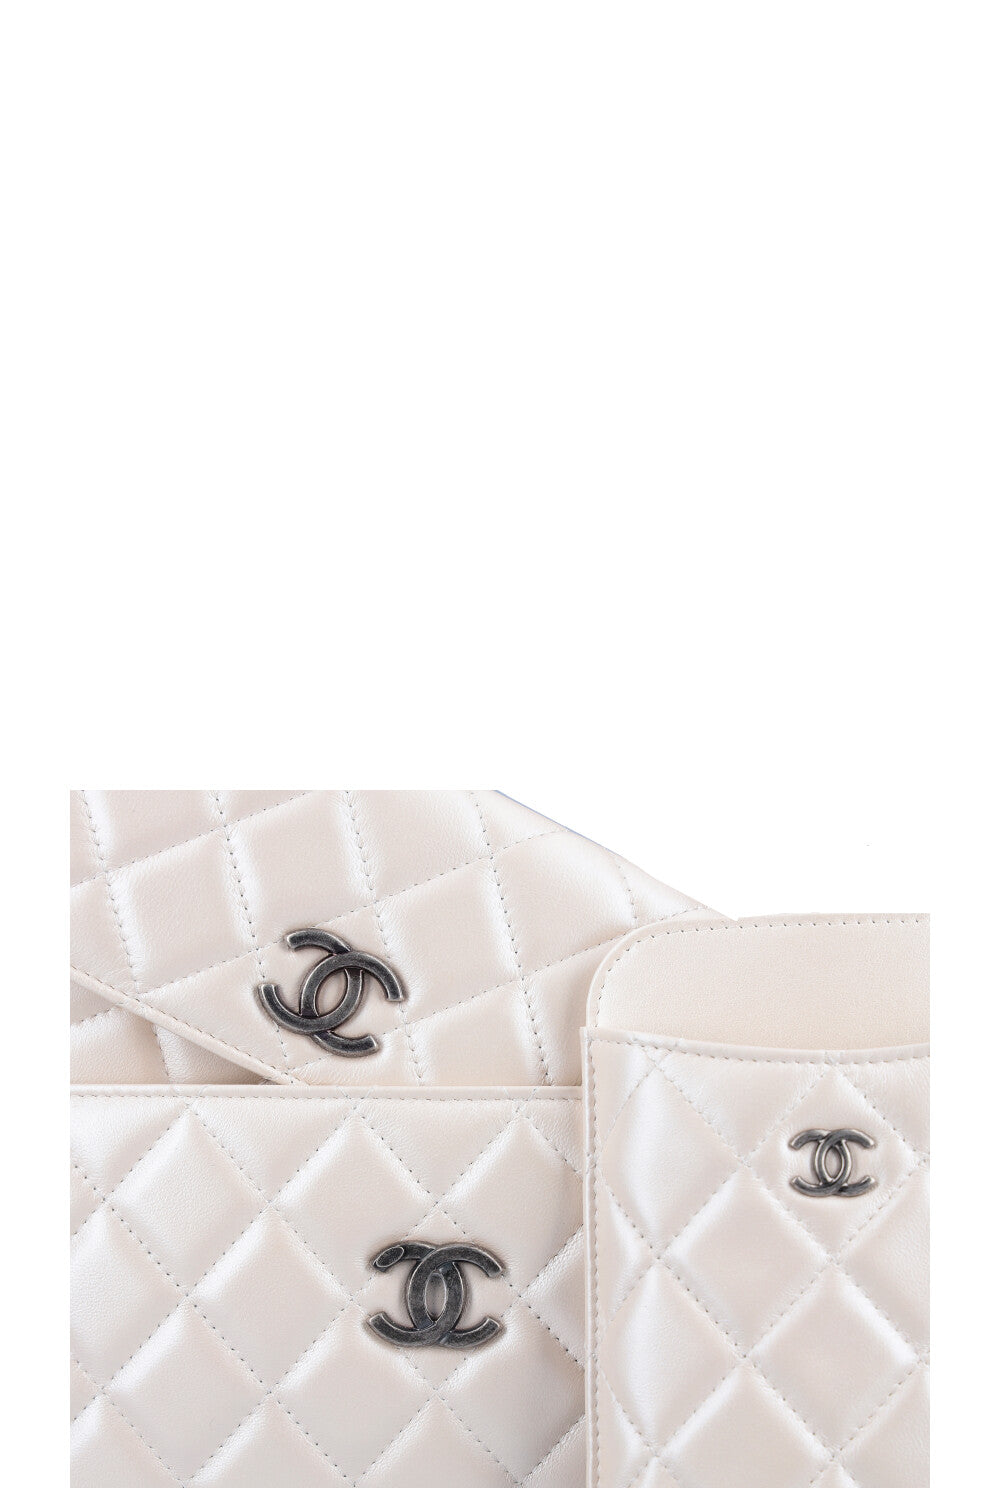 CHANEL Multi Pochette Bag Iridescent White